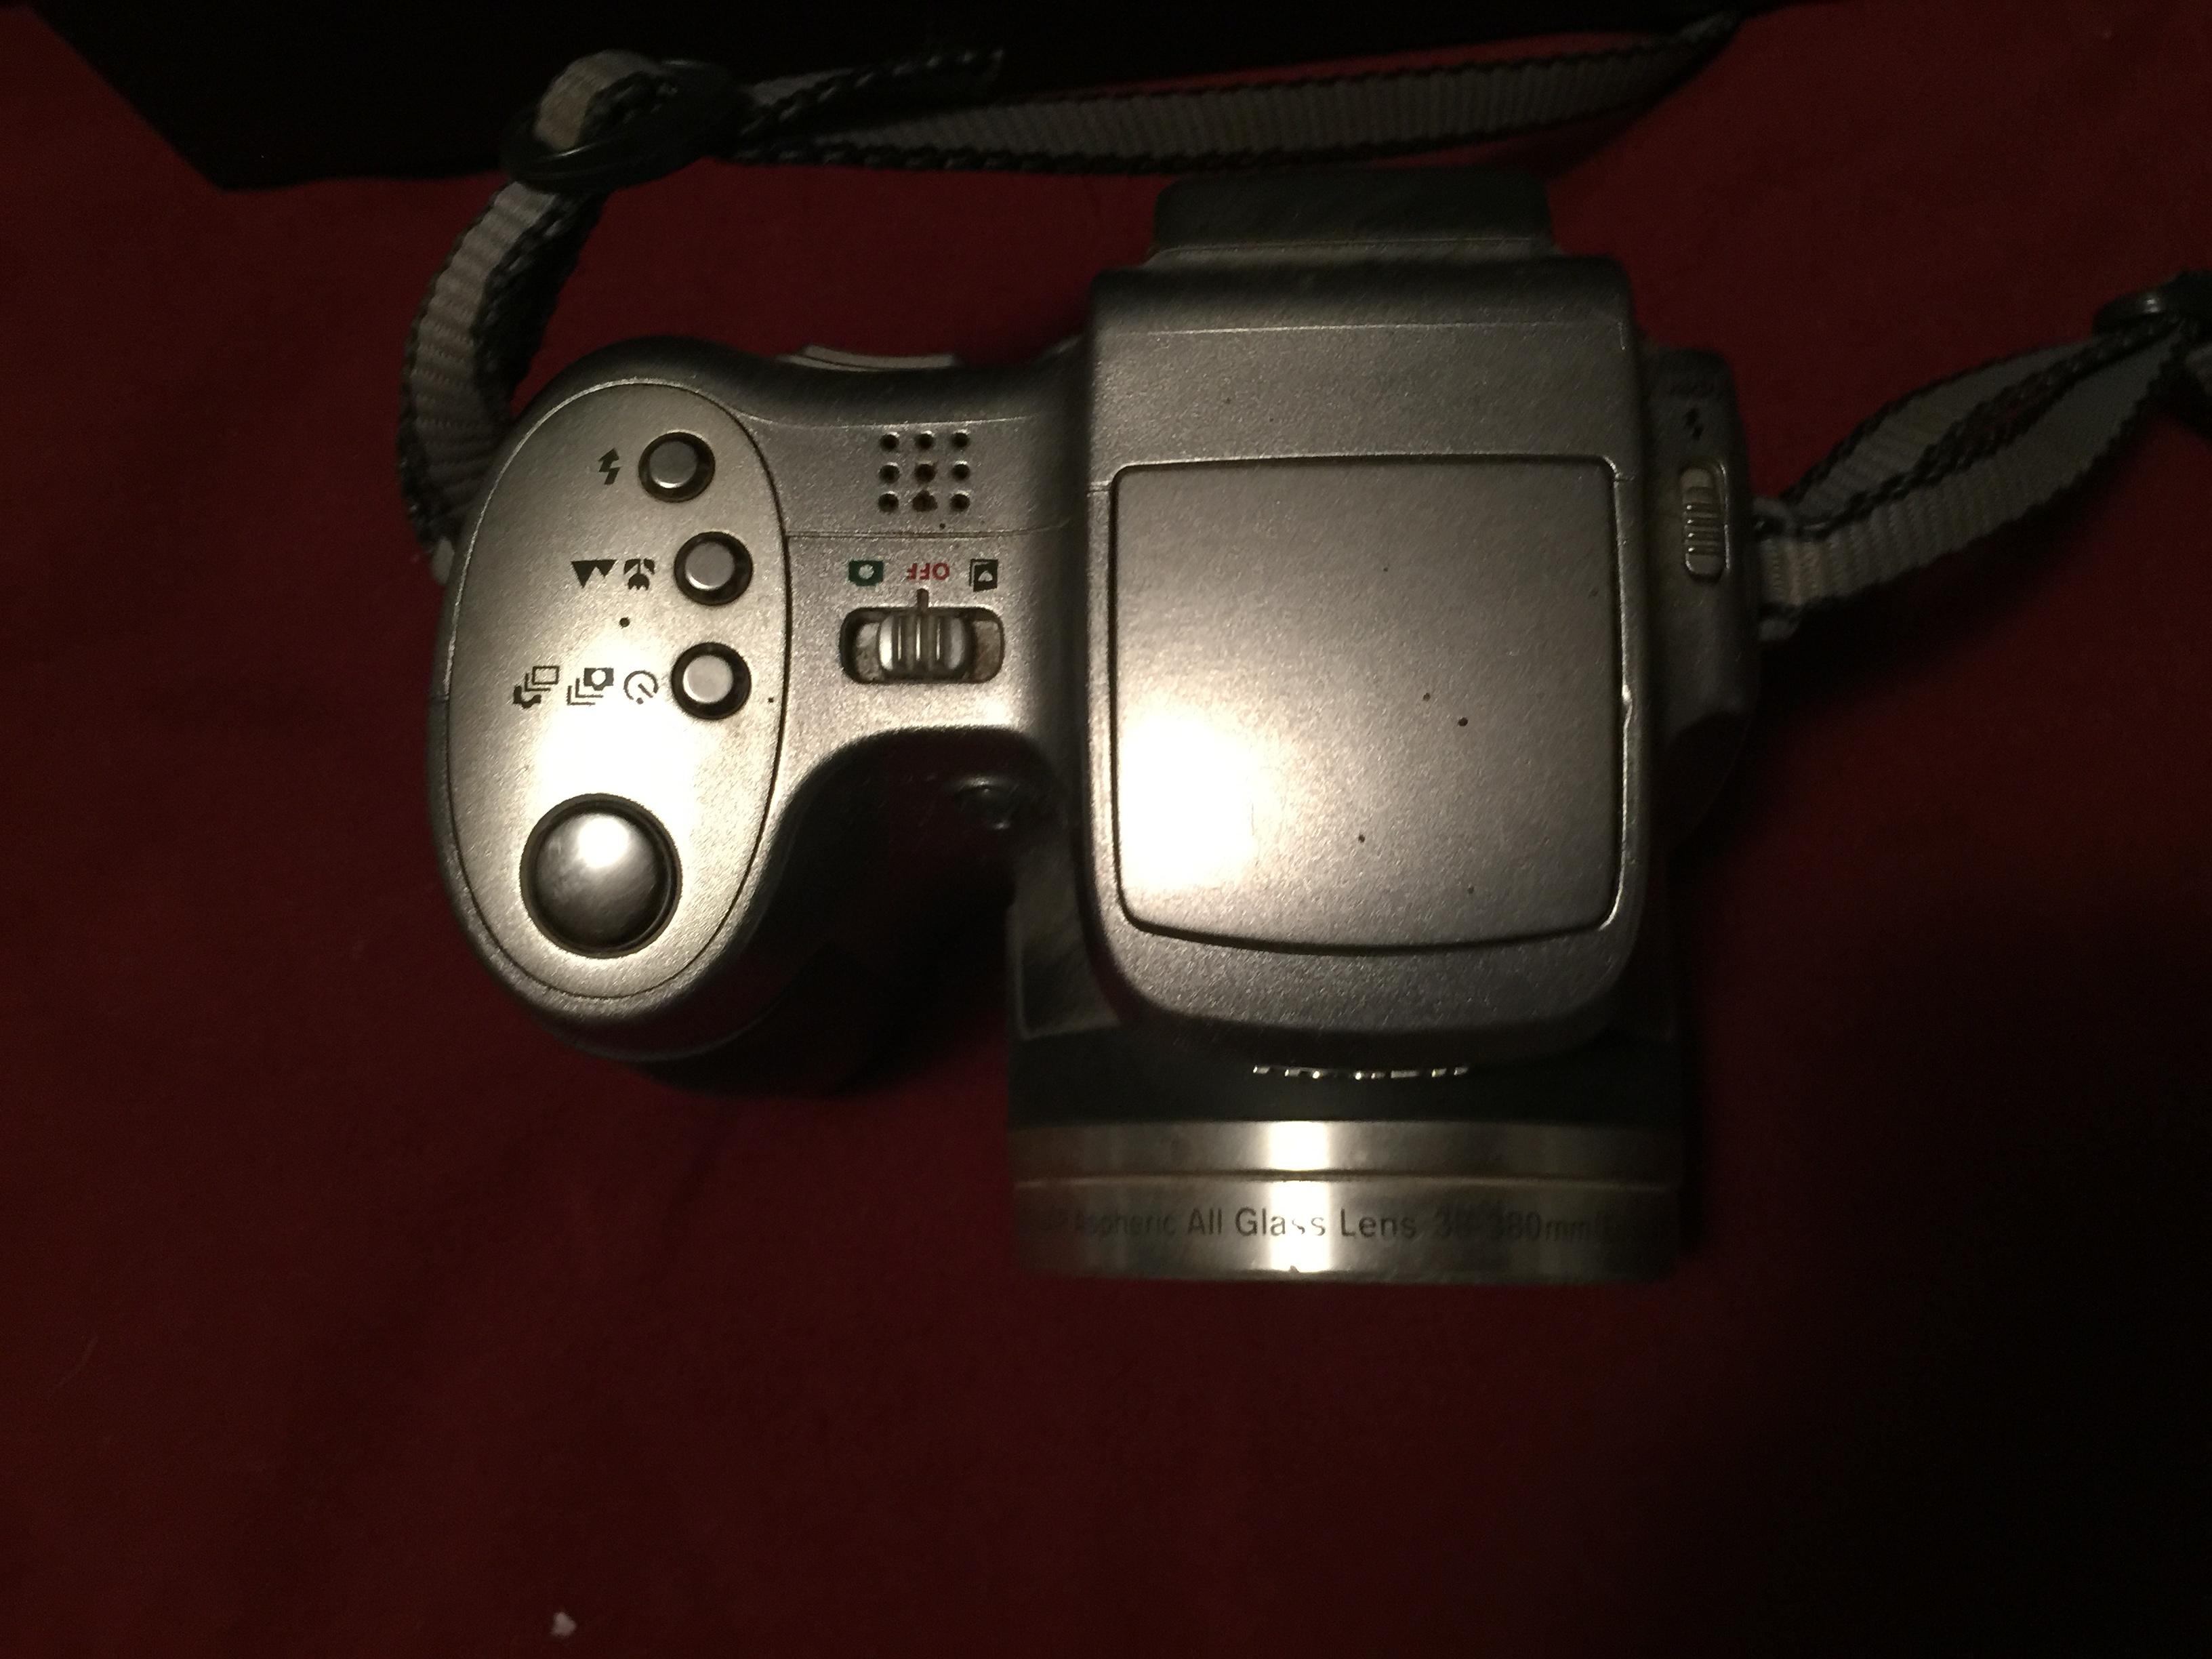 Camera Kodak z740